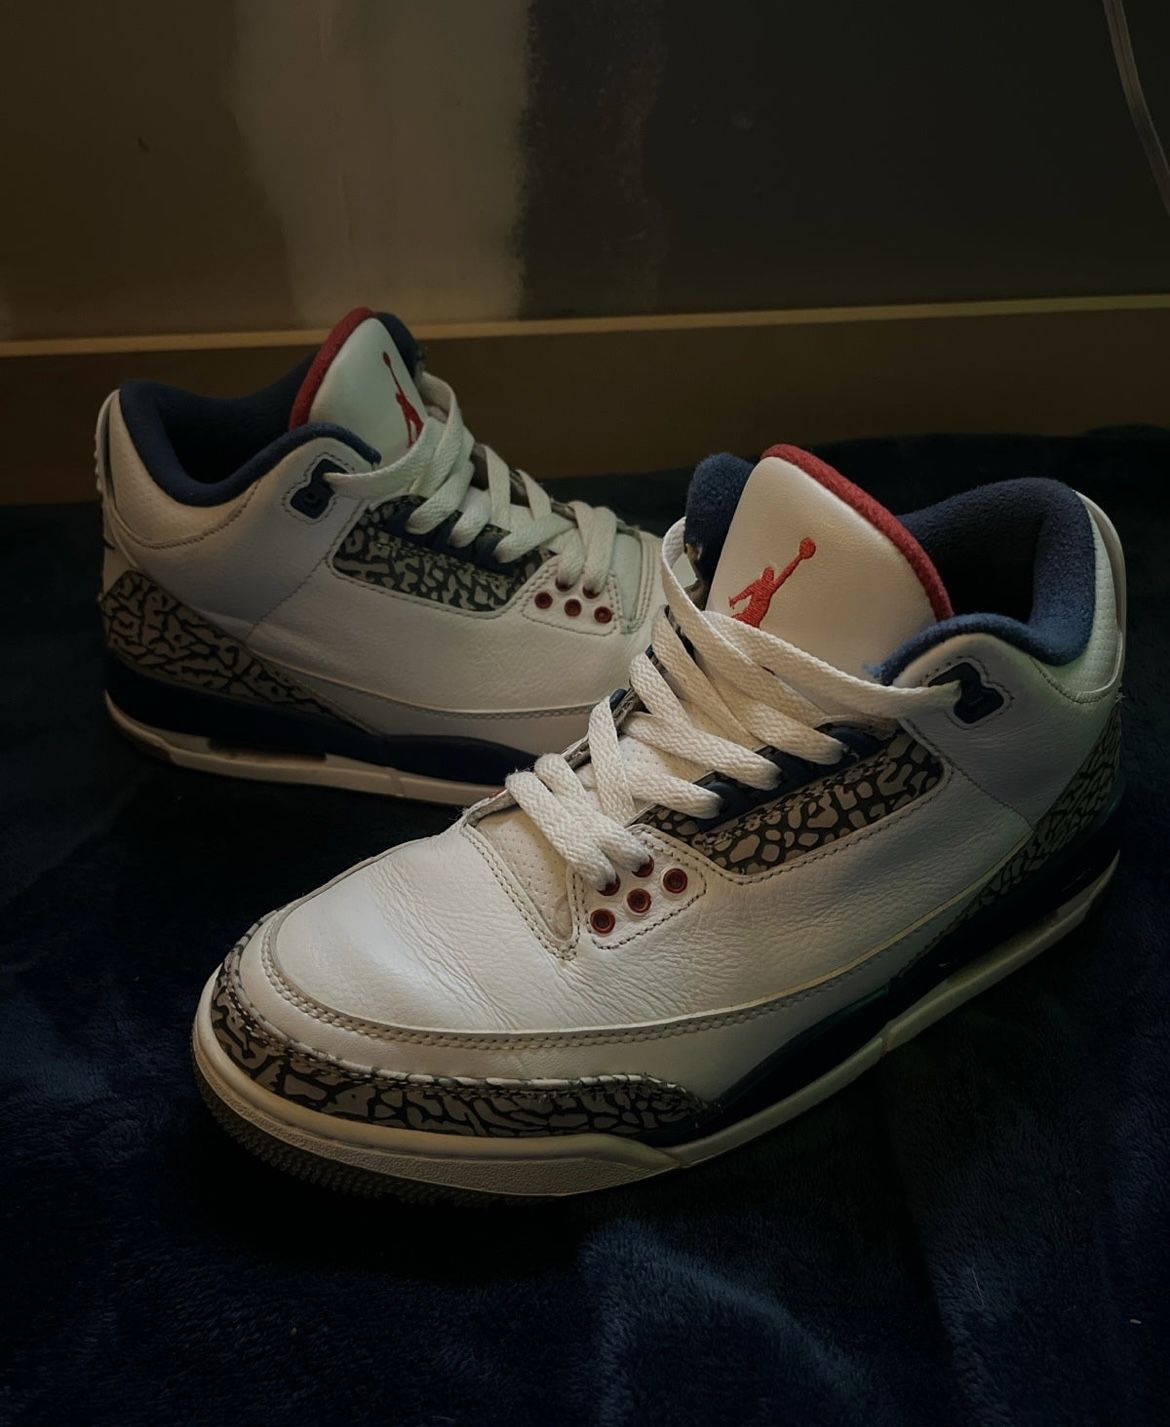 Air Jordan 3 ‘True Blue’ 